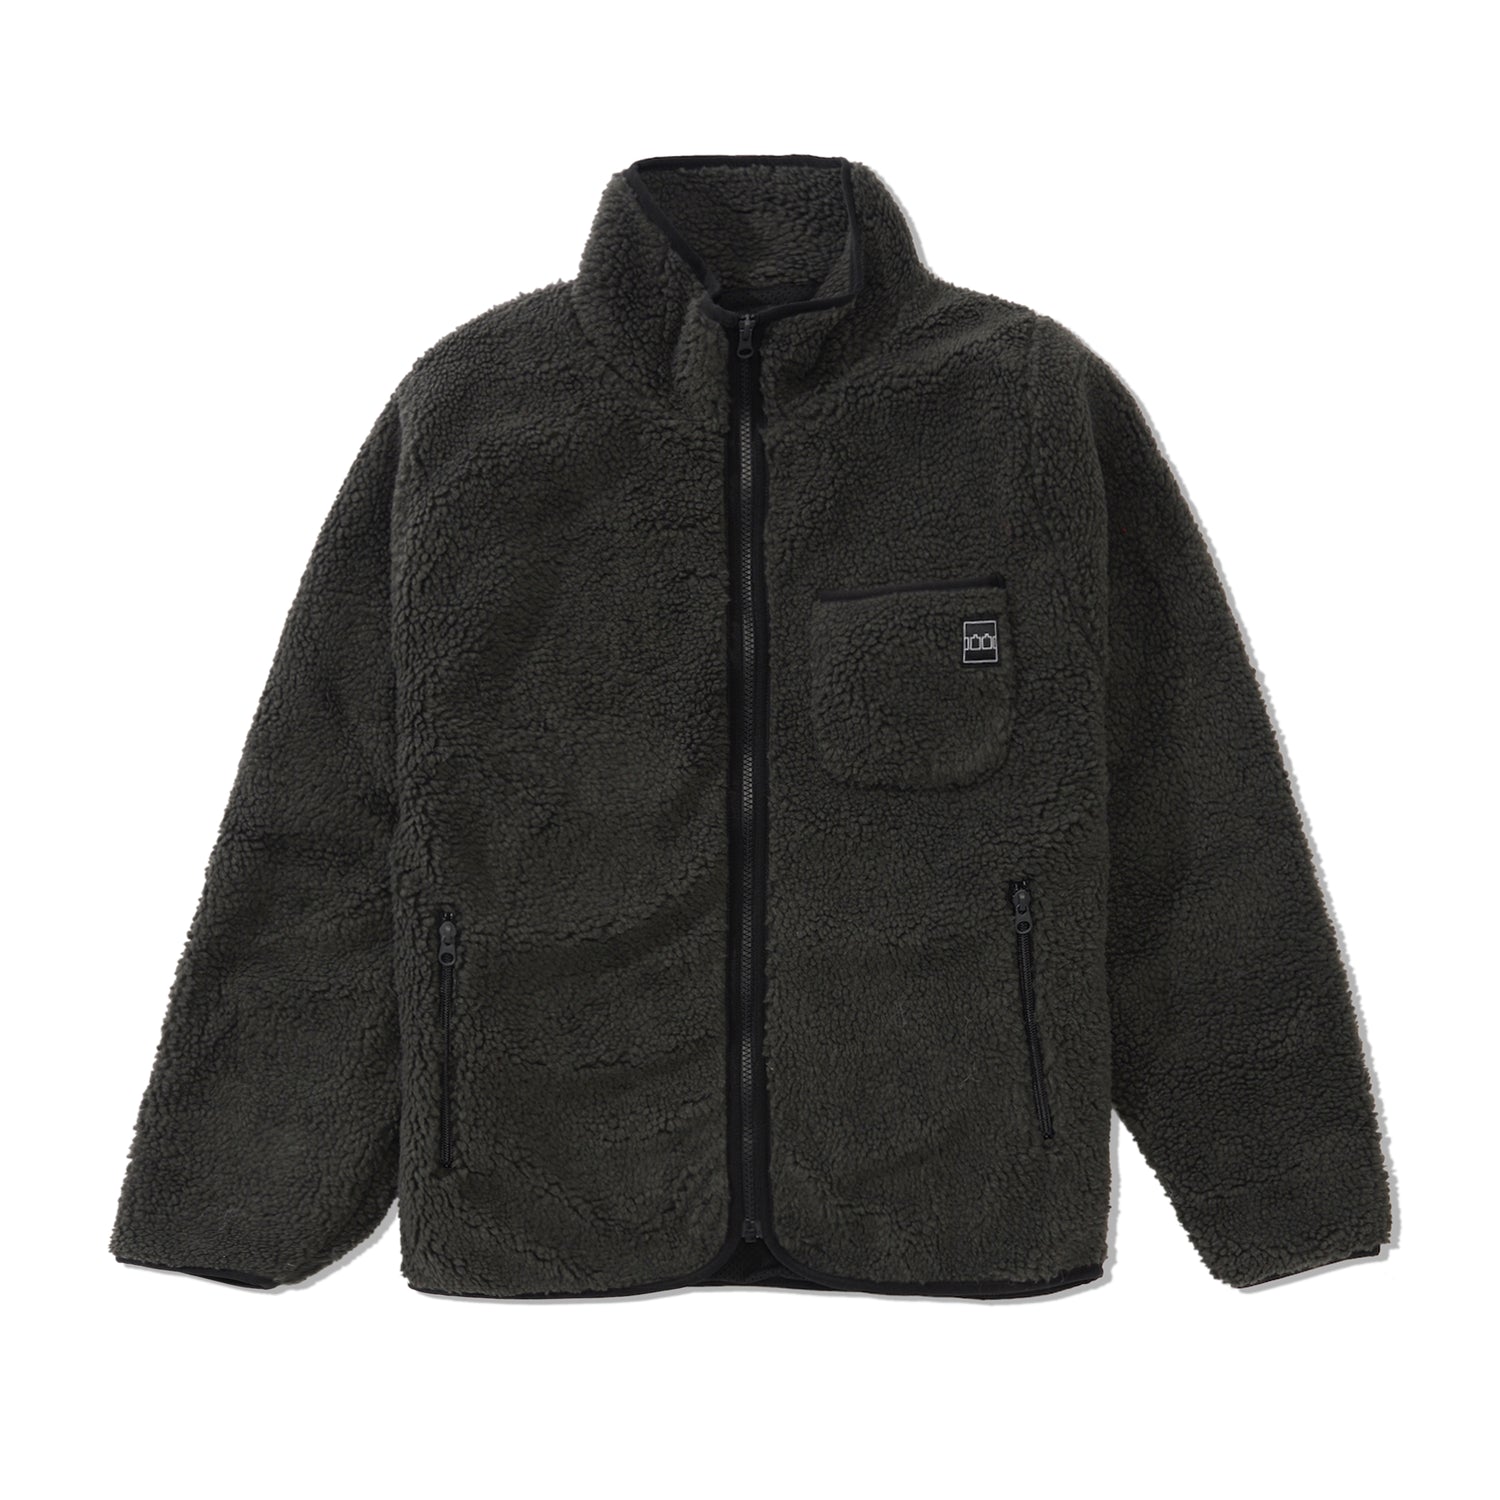 TTT Zip Fleece, Charcoal / Black